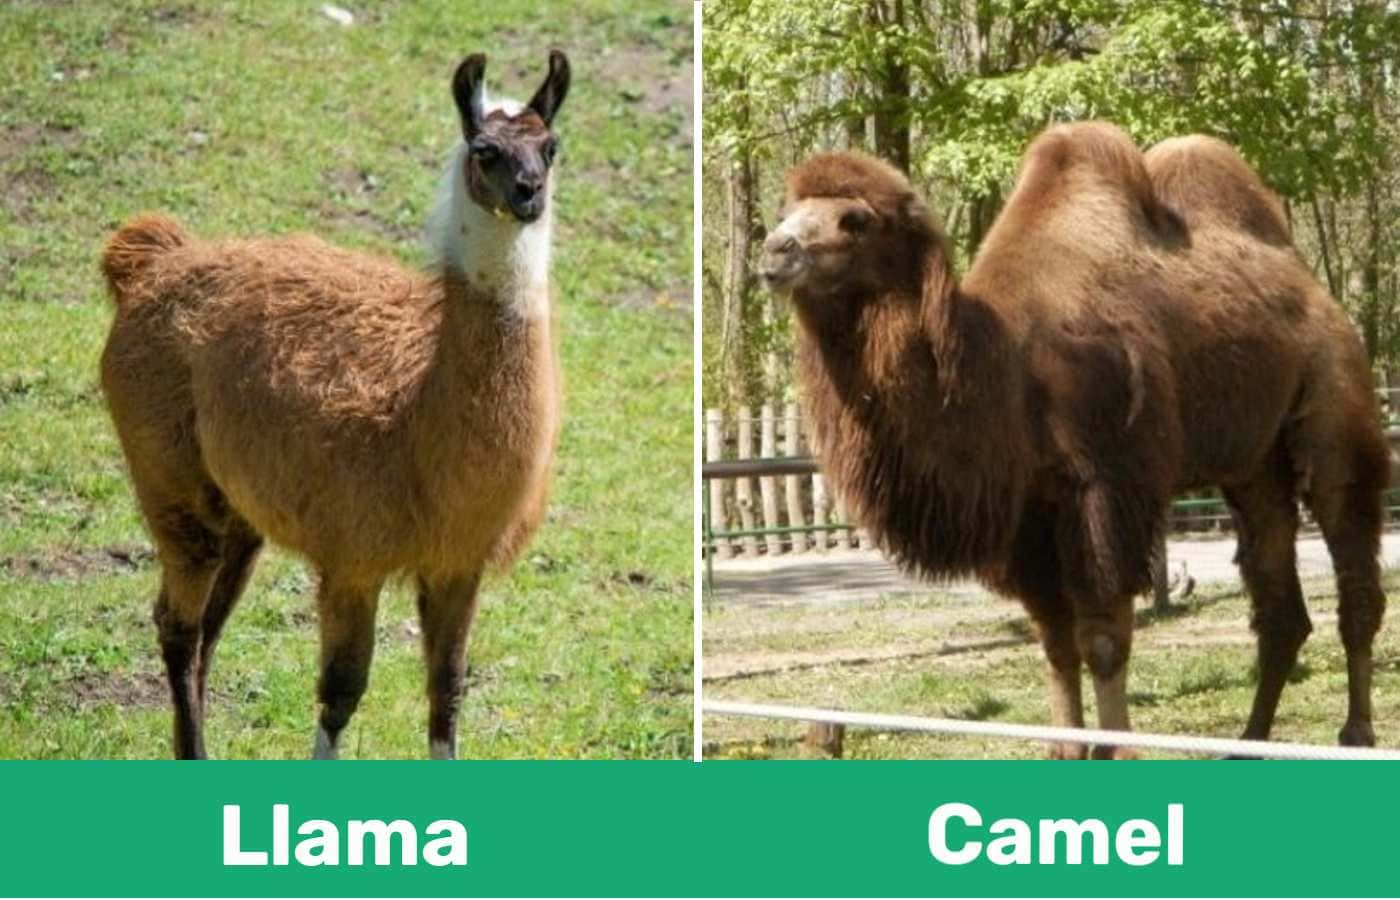 Llama vs Camel